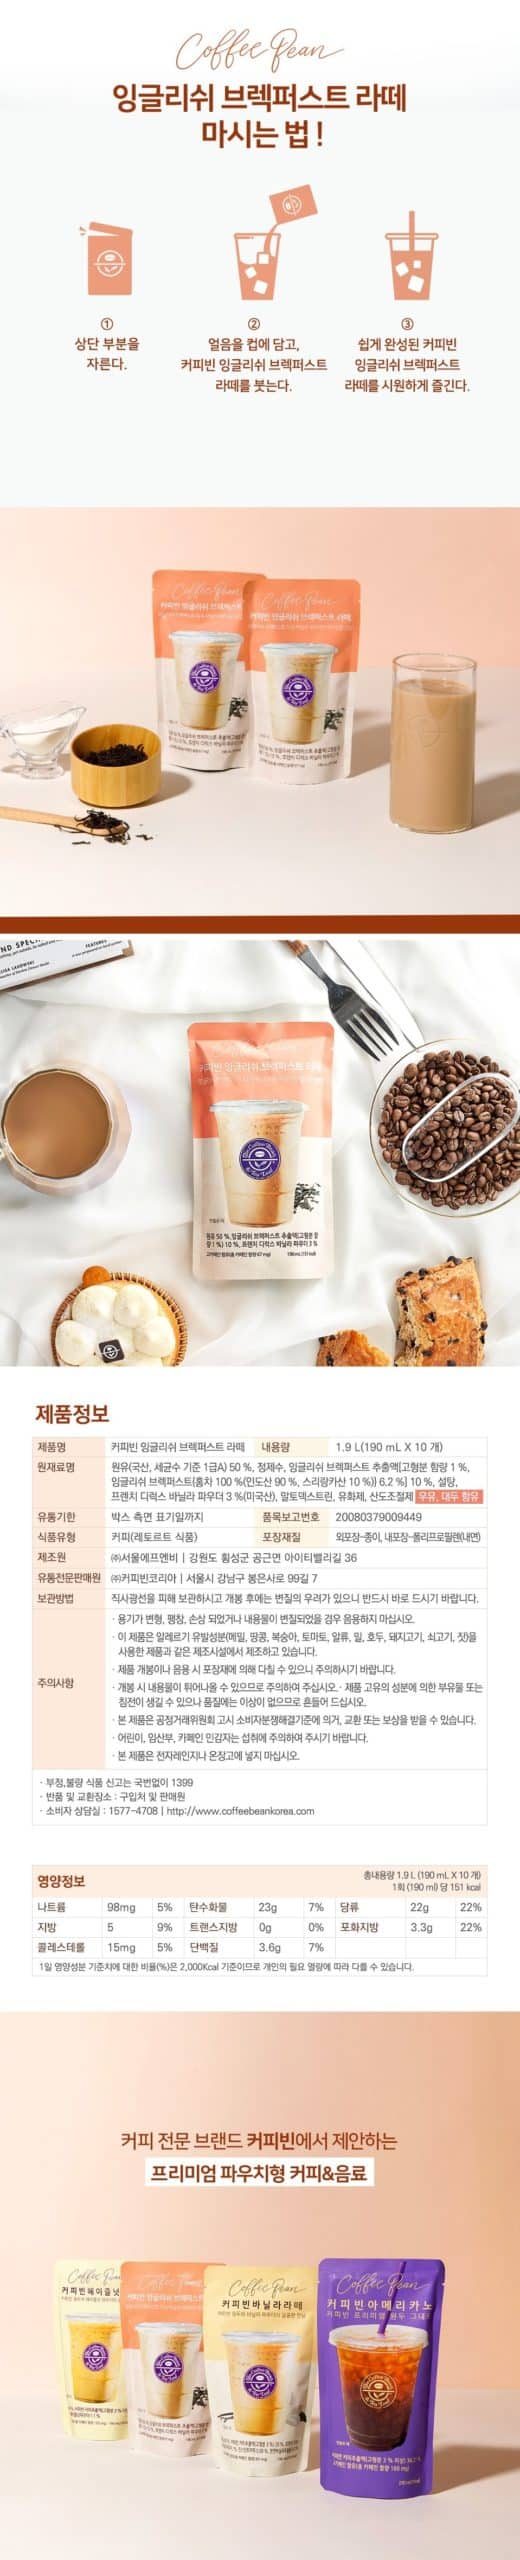 韓國食品-[CoffeeBean] 英式餐茶拿鐵 190ml